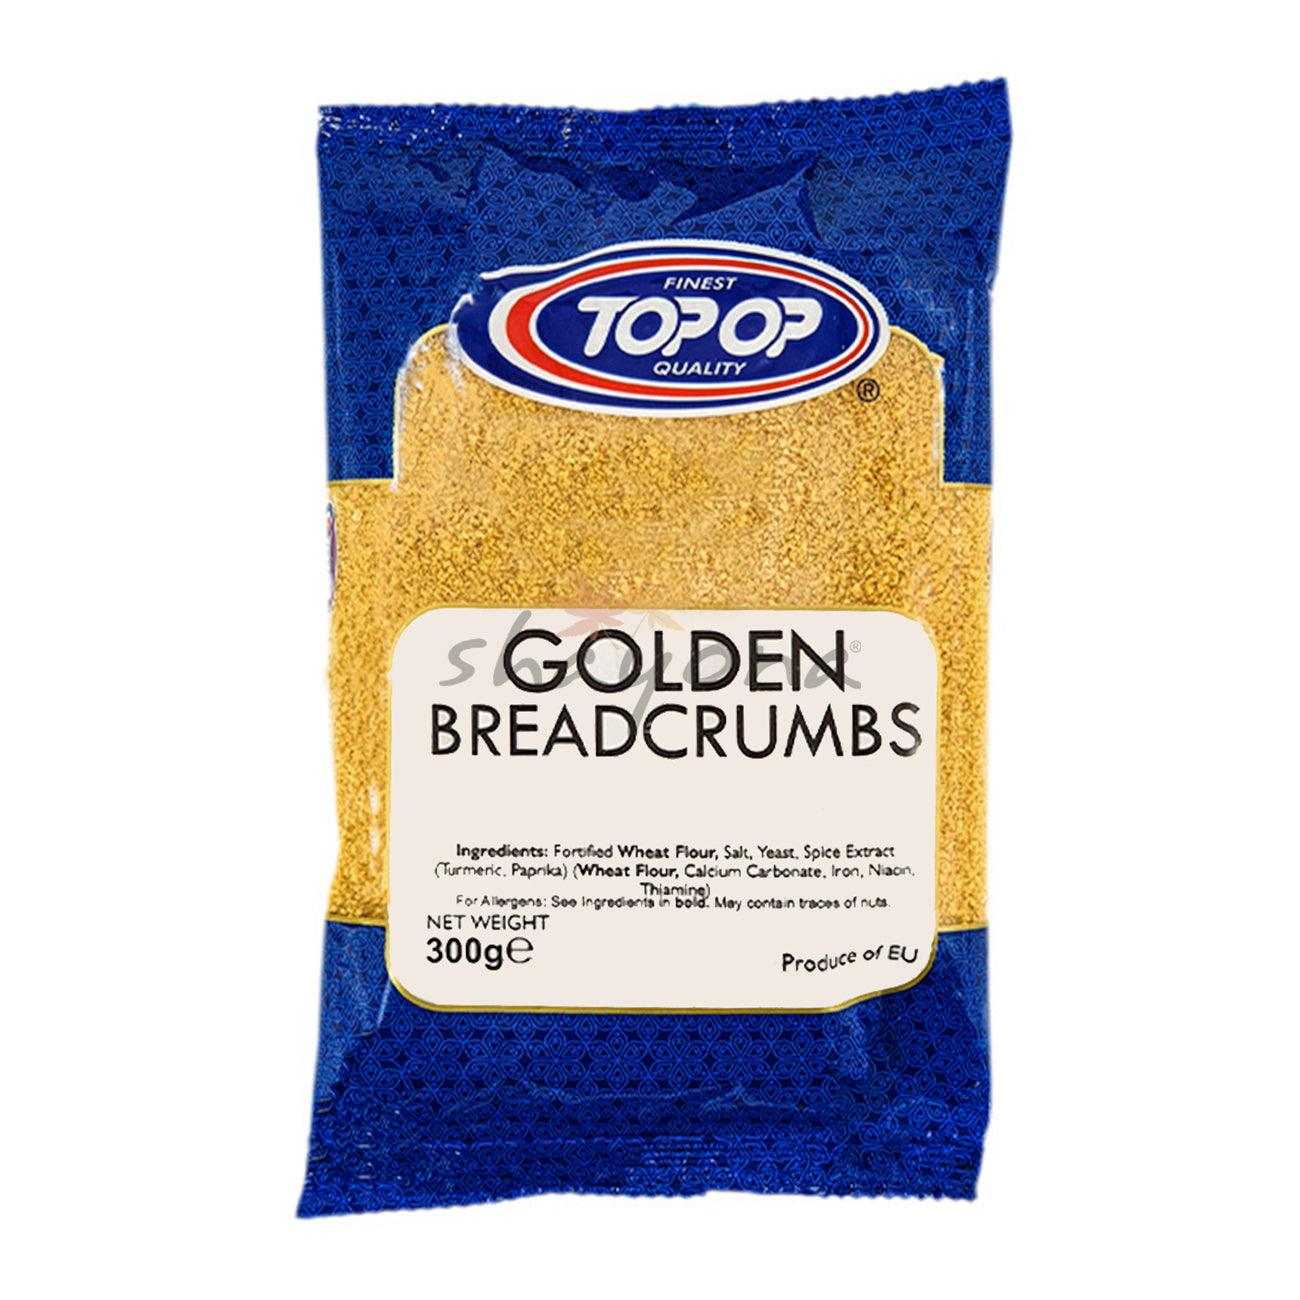 Top-op Golden Breadcrumbs